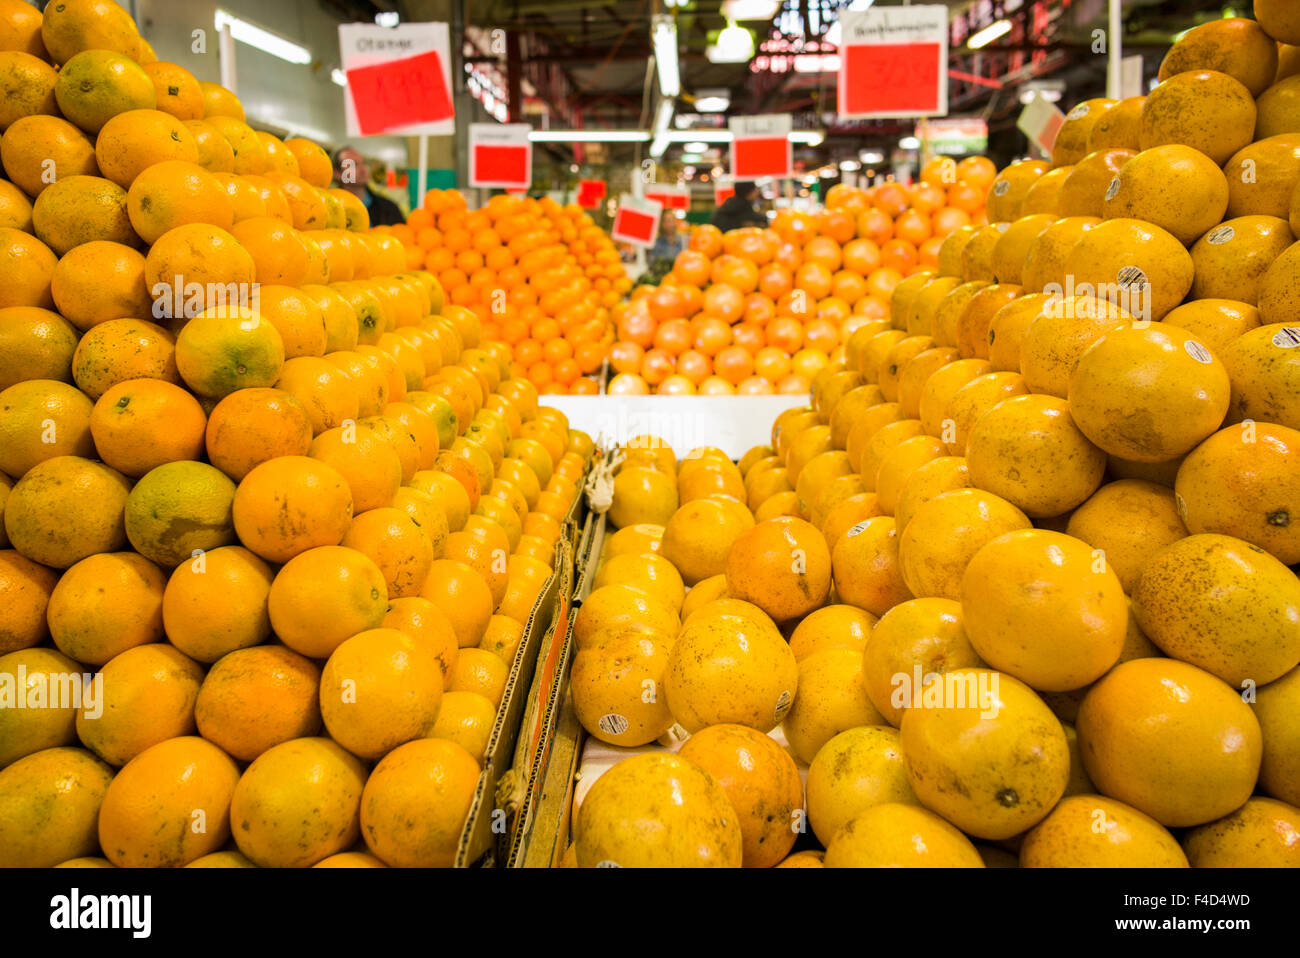 Canada, Montreal, Marche Jean Talon market, grapefruit Stock Photo